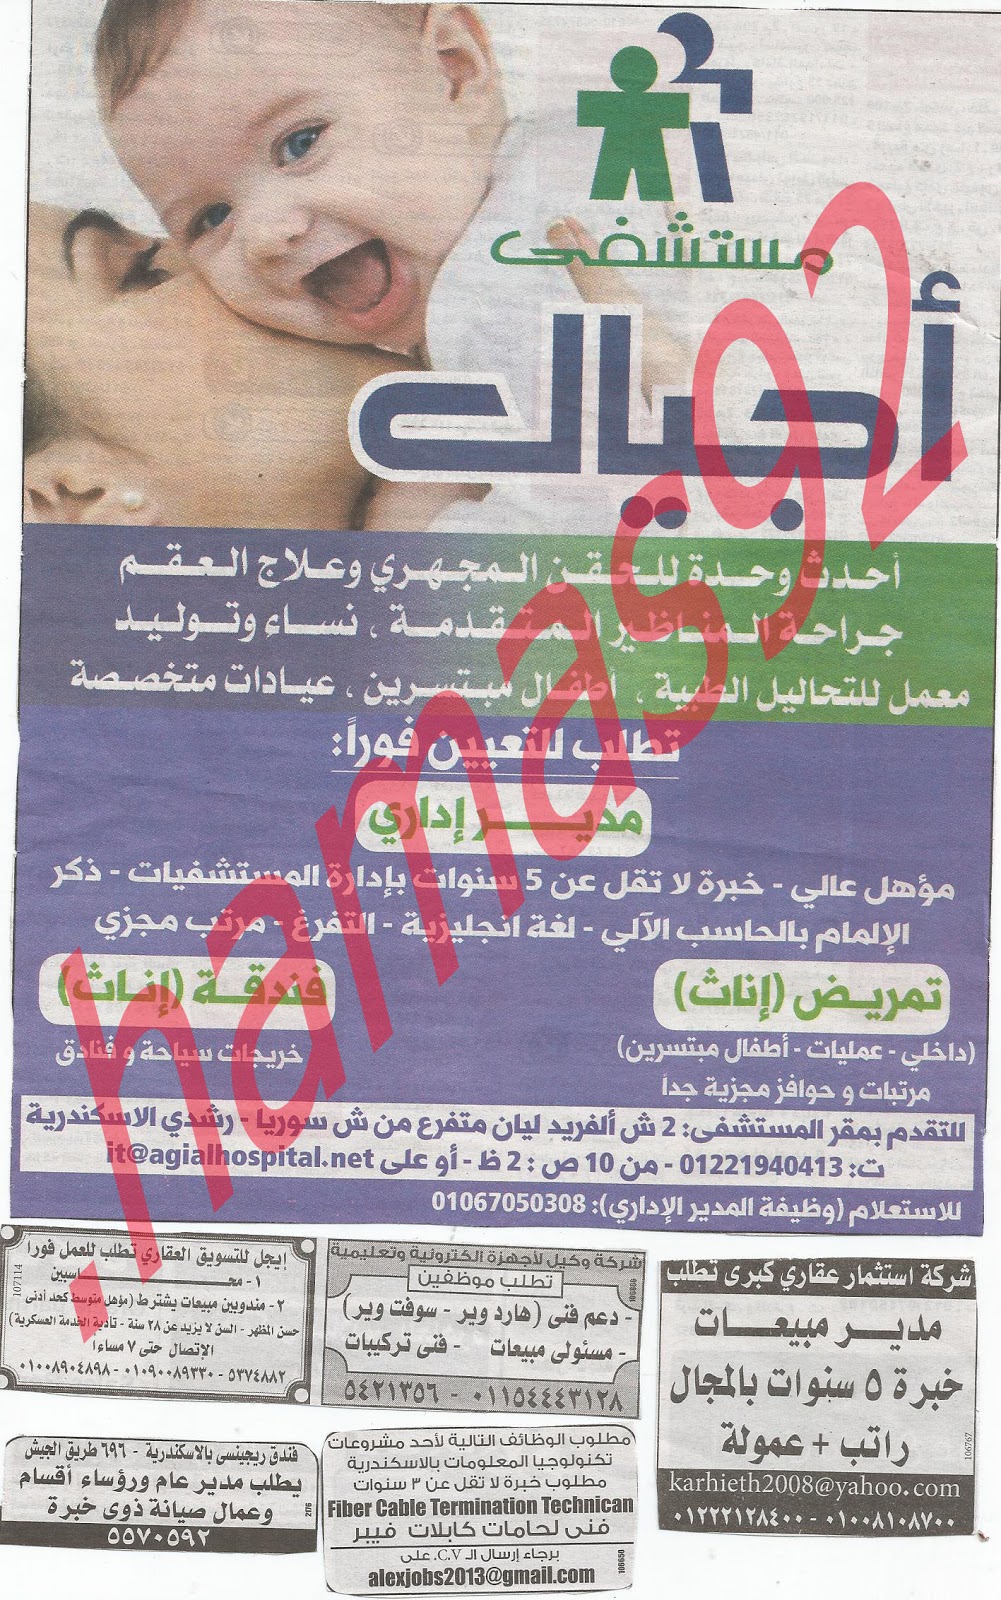 وظائف خالية من جريدة الوسيط الاسكندرية الثلاثاء 4/12/2012 - وظائف عديدة %D9%88+%D8%B3+%D8%B3+2